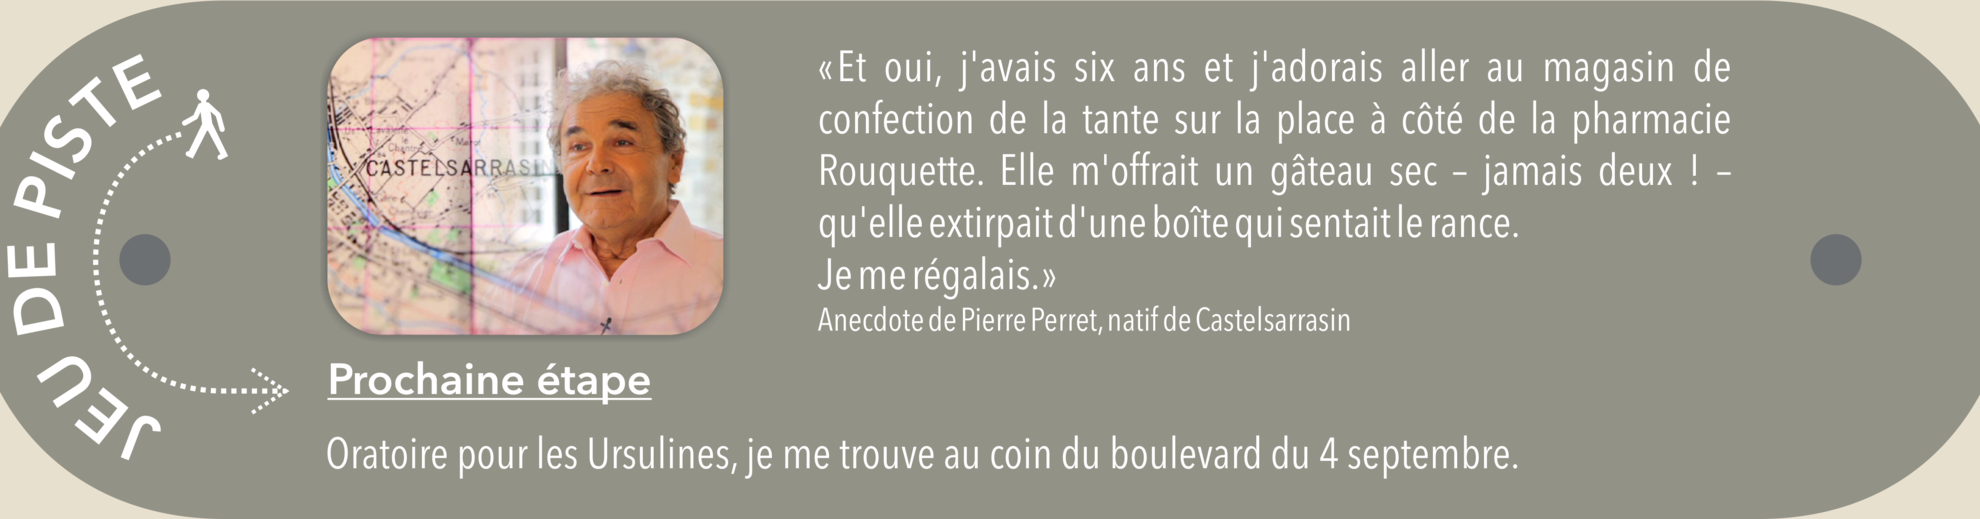 Panneau anecdote du jeu de piste avec Pierre Perret